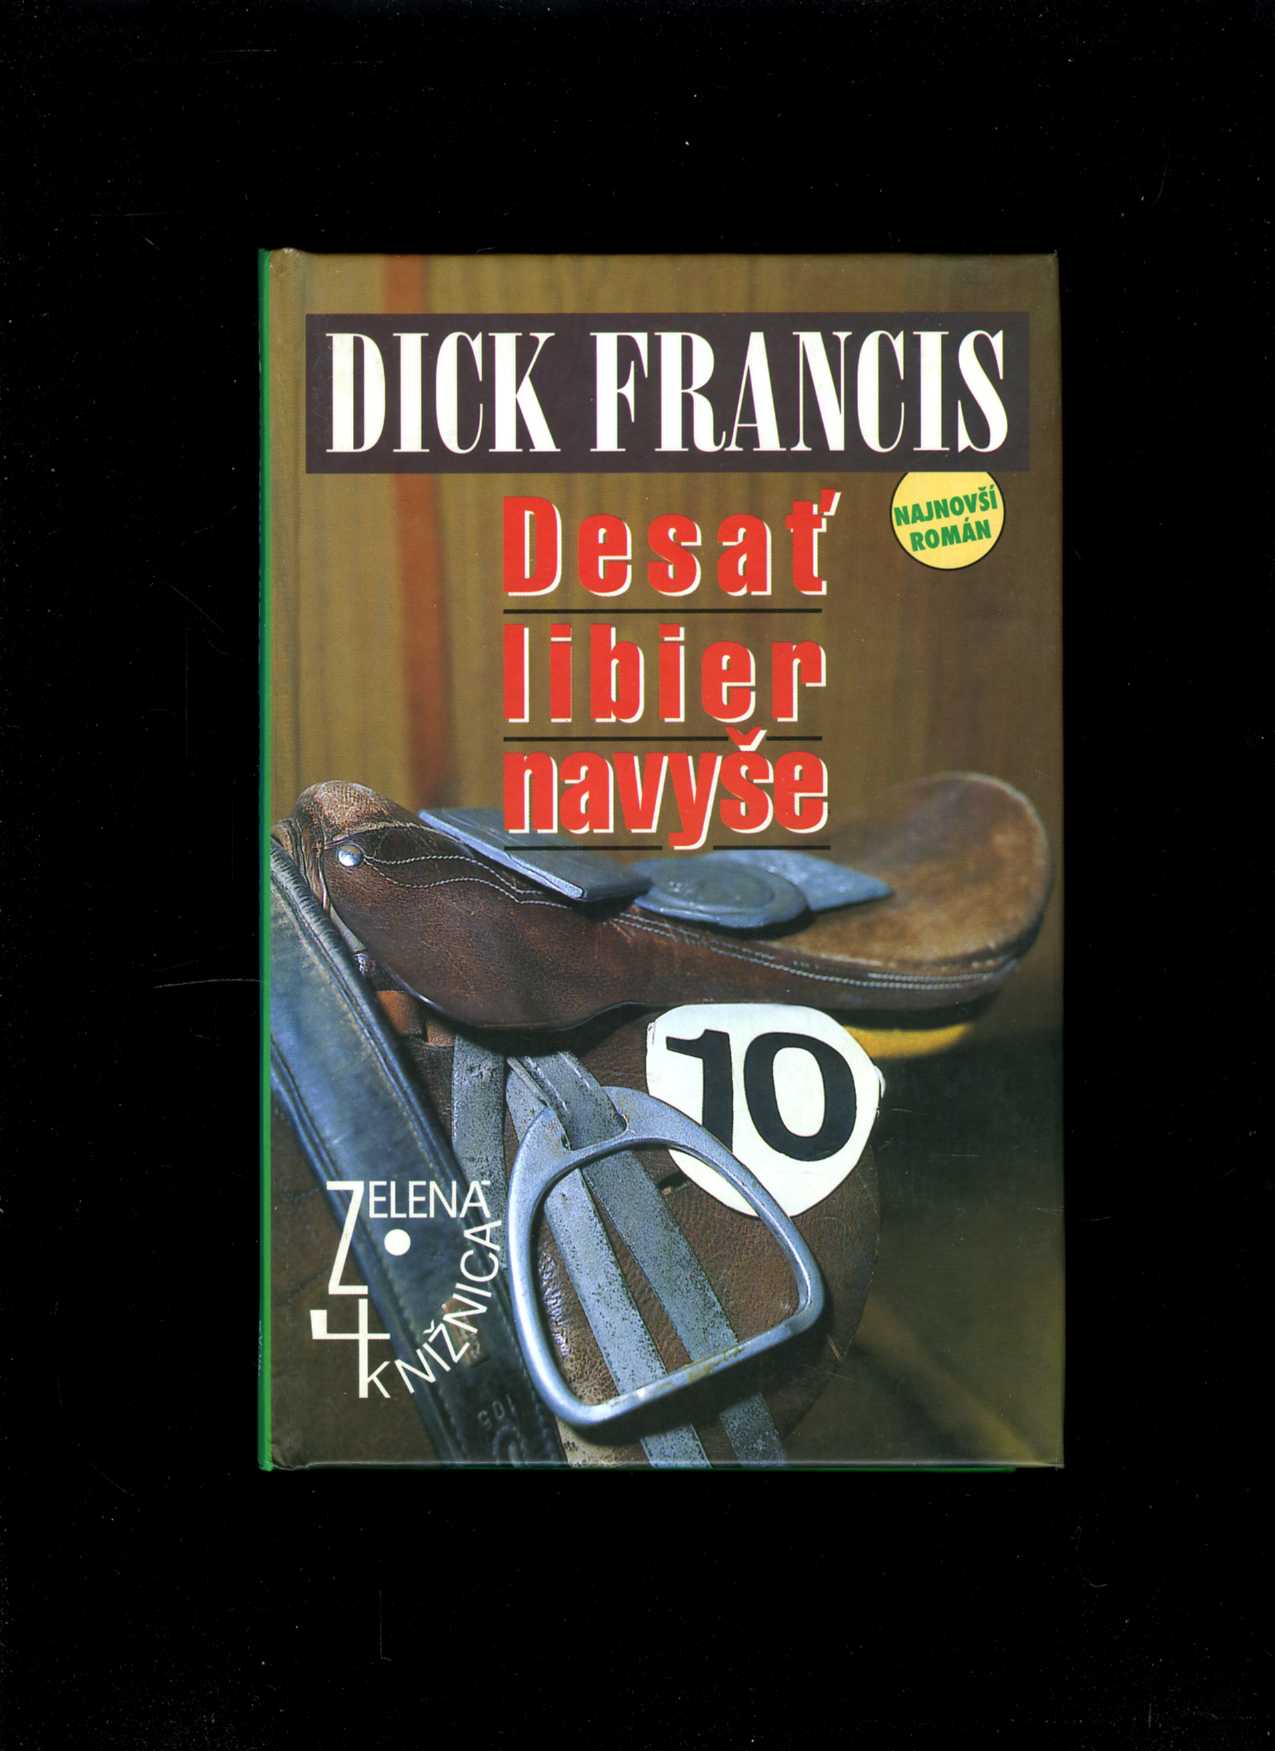 Desať libier navyše (Dick Francis)